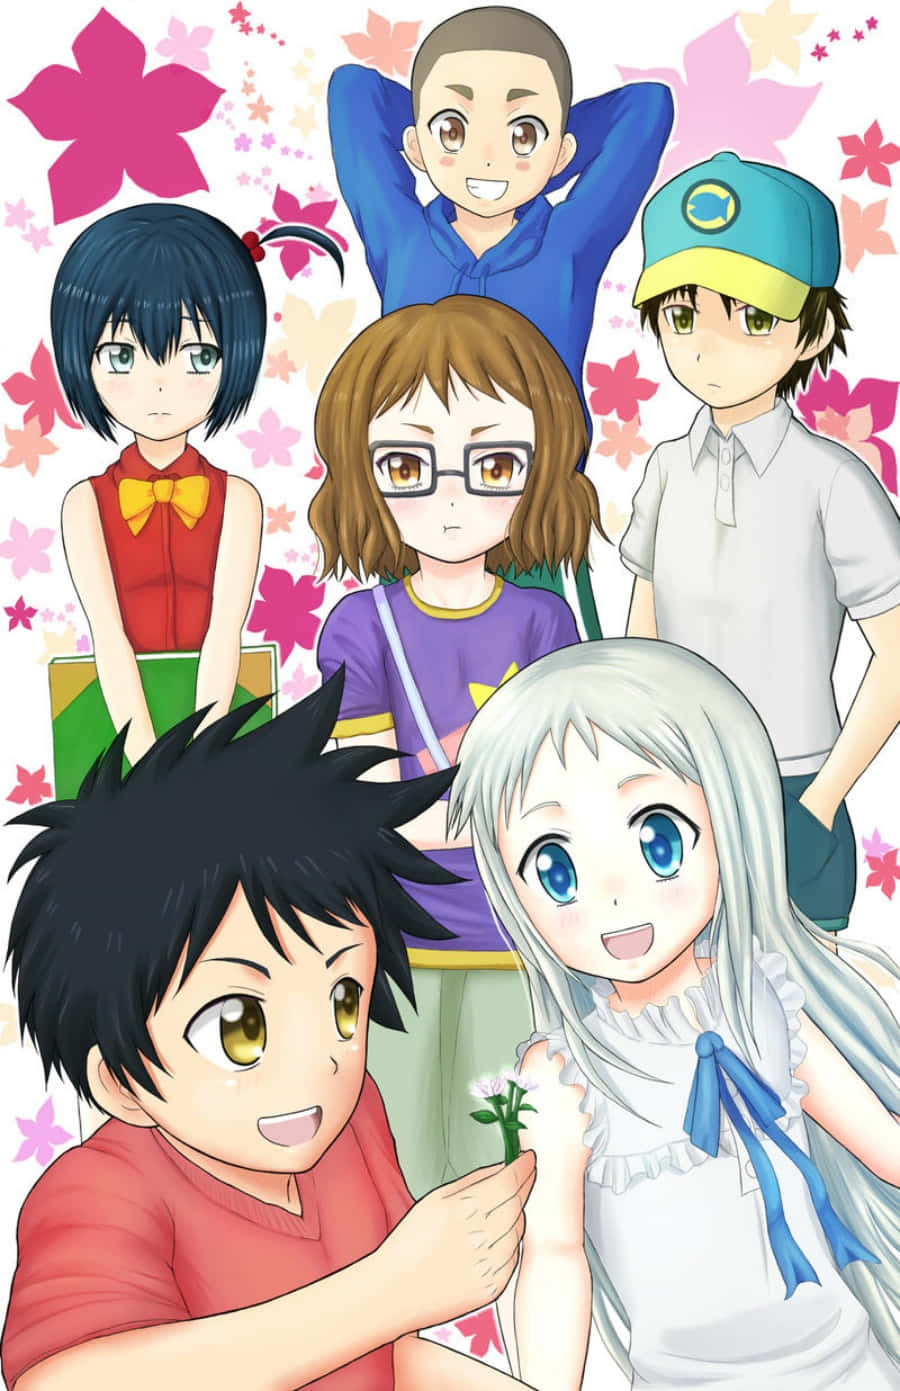 Einegruppe Von Anime-charakteren Steht Vor Einem Rosafarbenen Hintergrund.